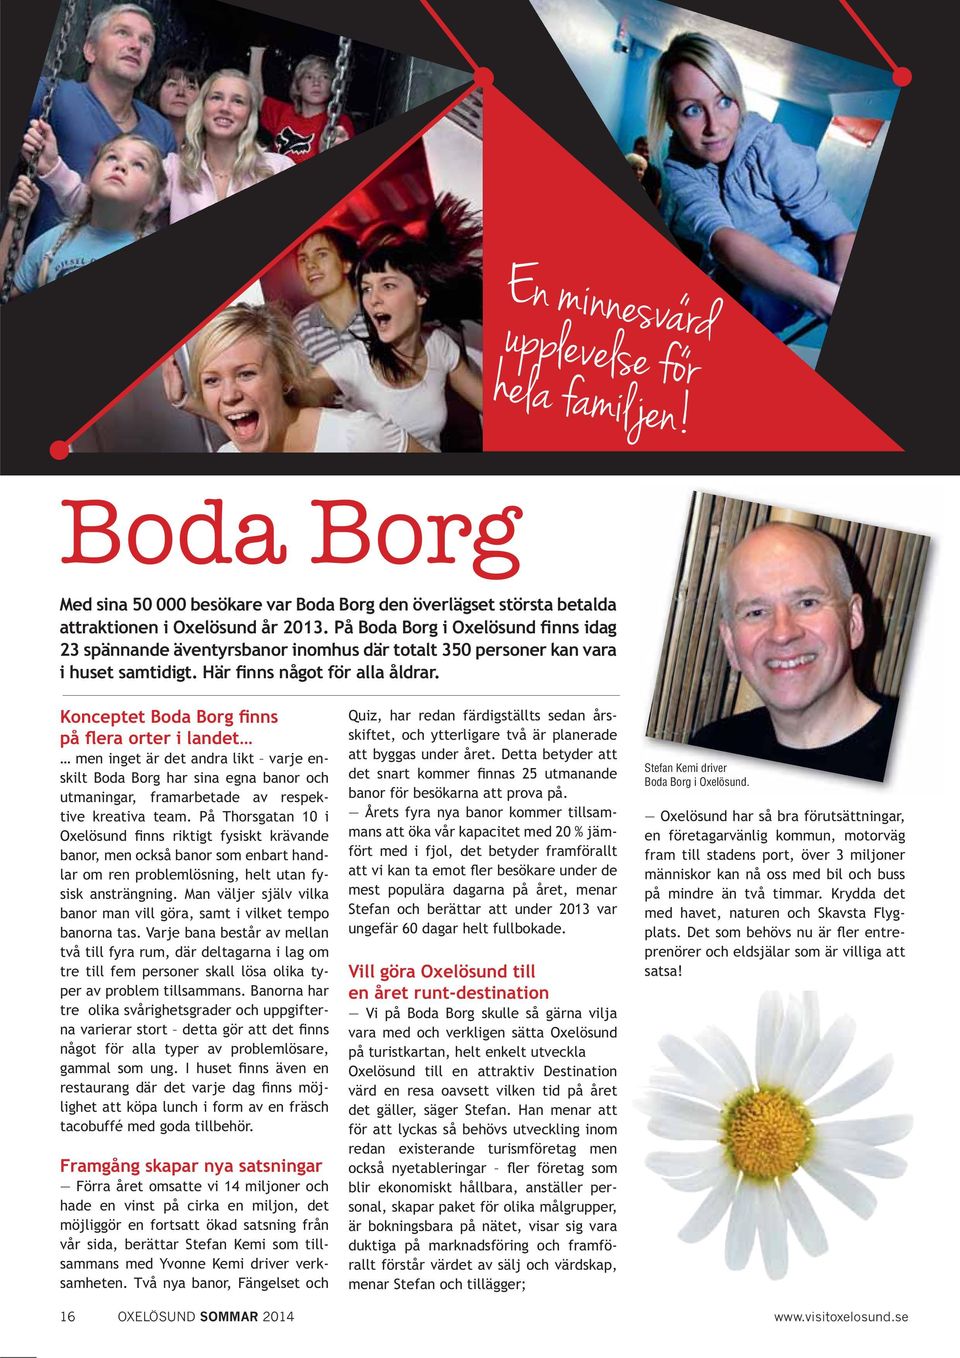 Konceptet Boda Borg finns på flera orter i landet men inget är det andra likt varje enskilt Boda Borg har sina egna banor och utmaningar, framarbetade av respektive kreativa team.